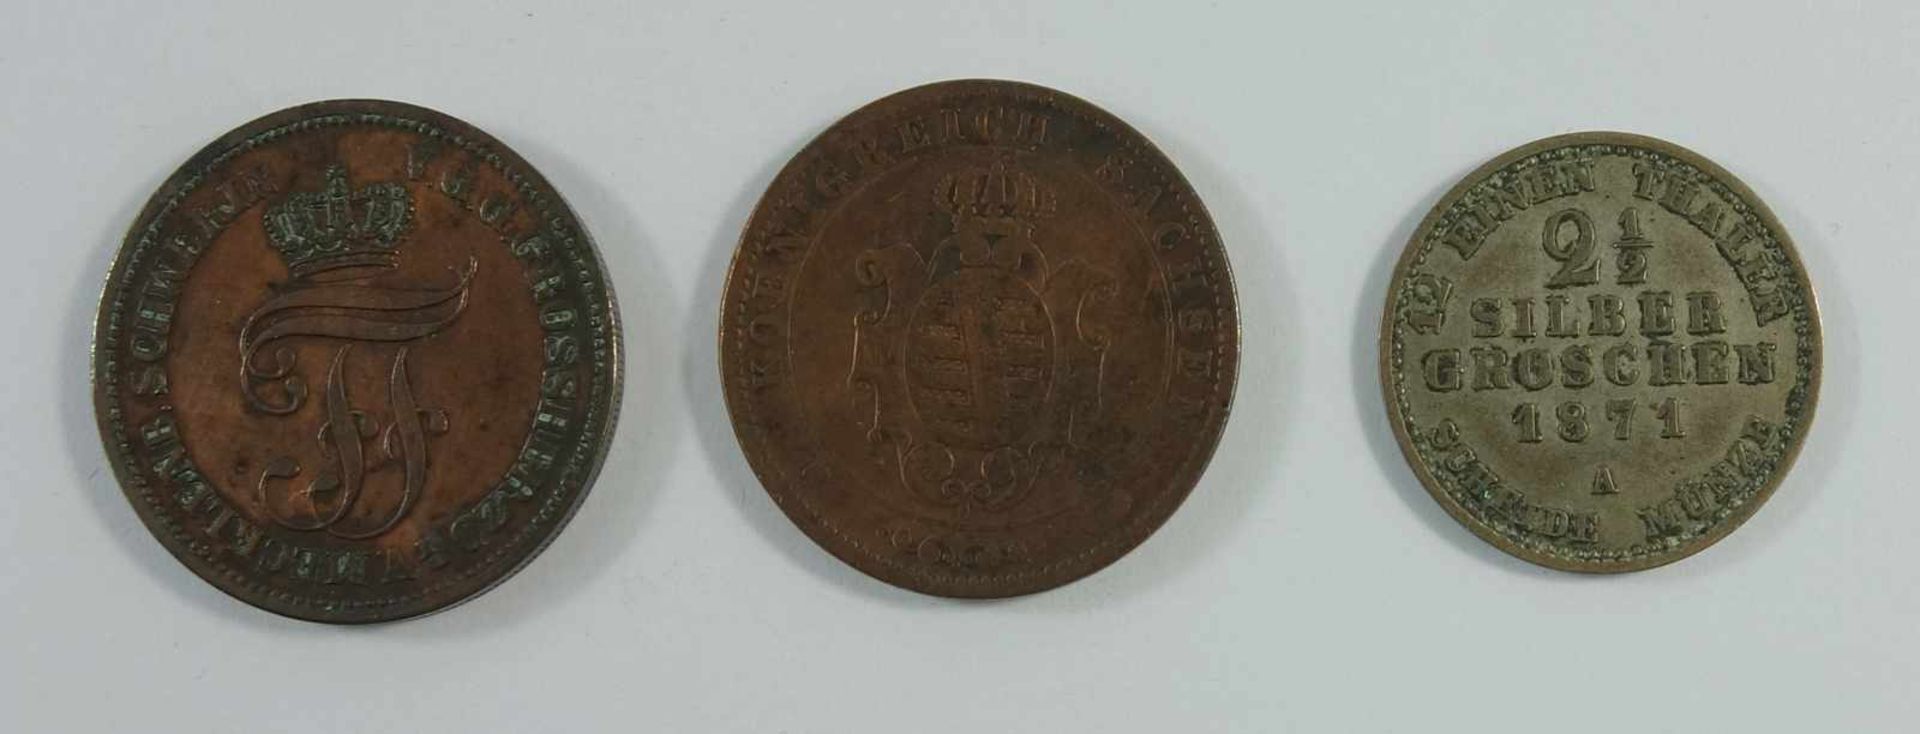 3 Kleinmünzen, 5 Pf. Meckl. Schwerin 1872, B; 3 Pf. Königreich Sachsen 1862; 2 1/2 Silbergroschen - Image 2 of 2